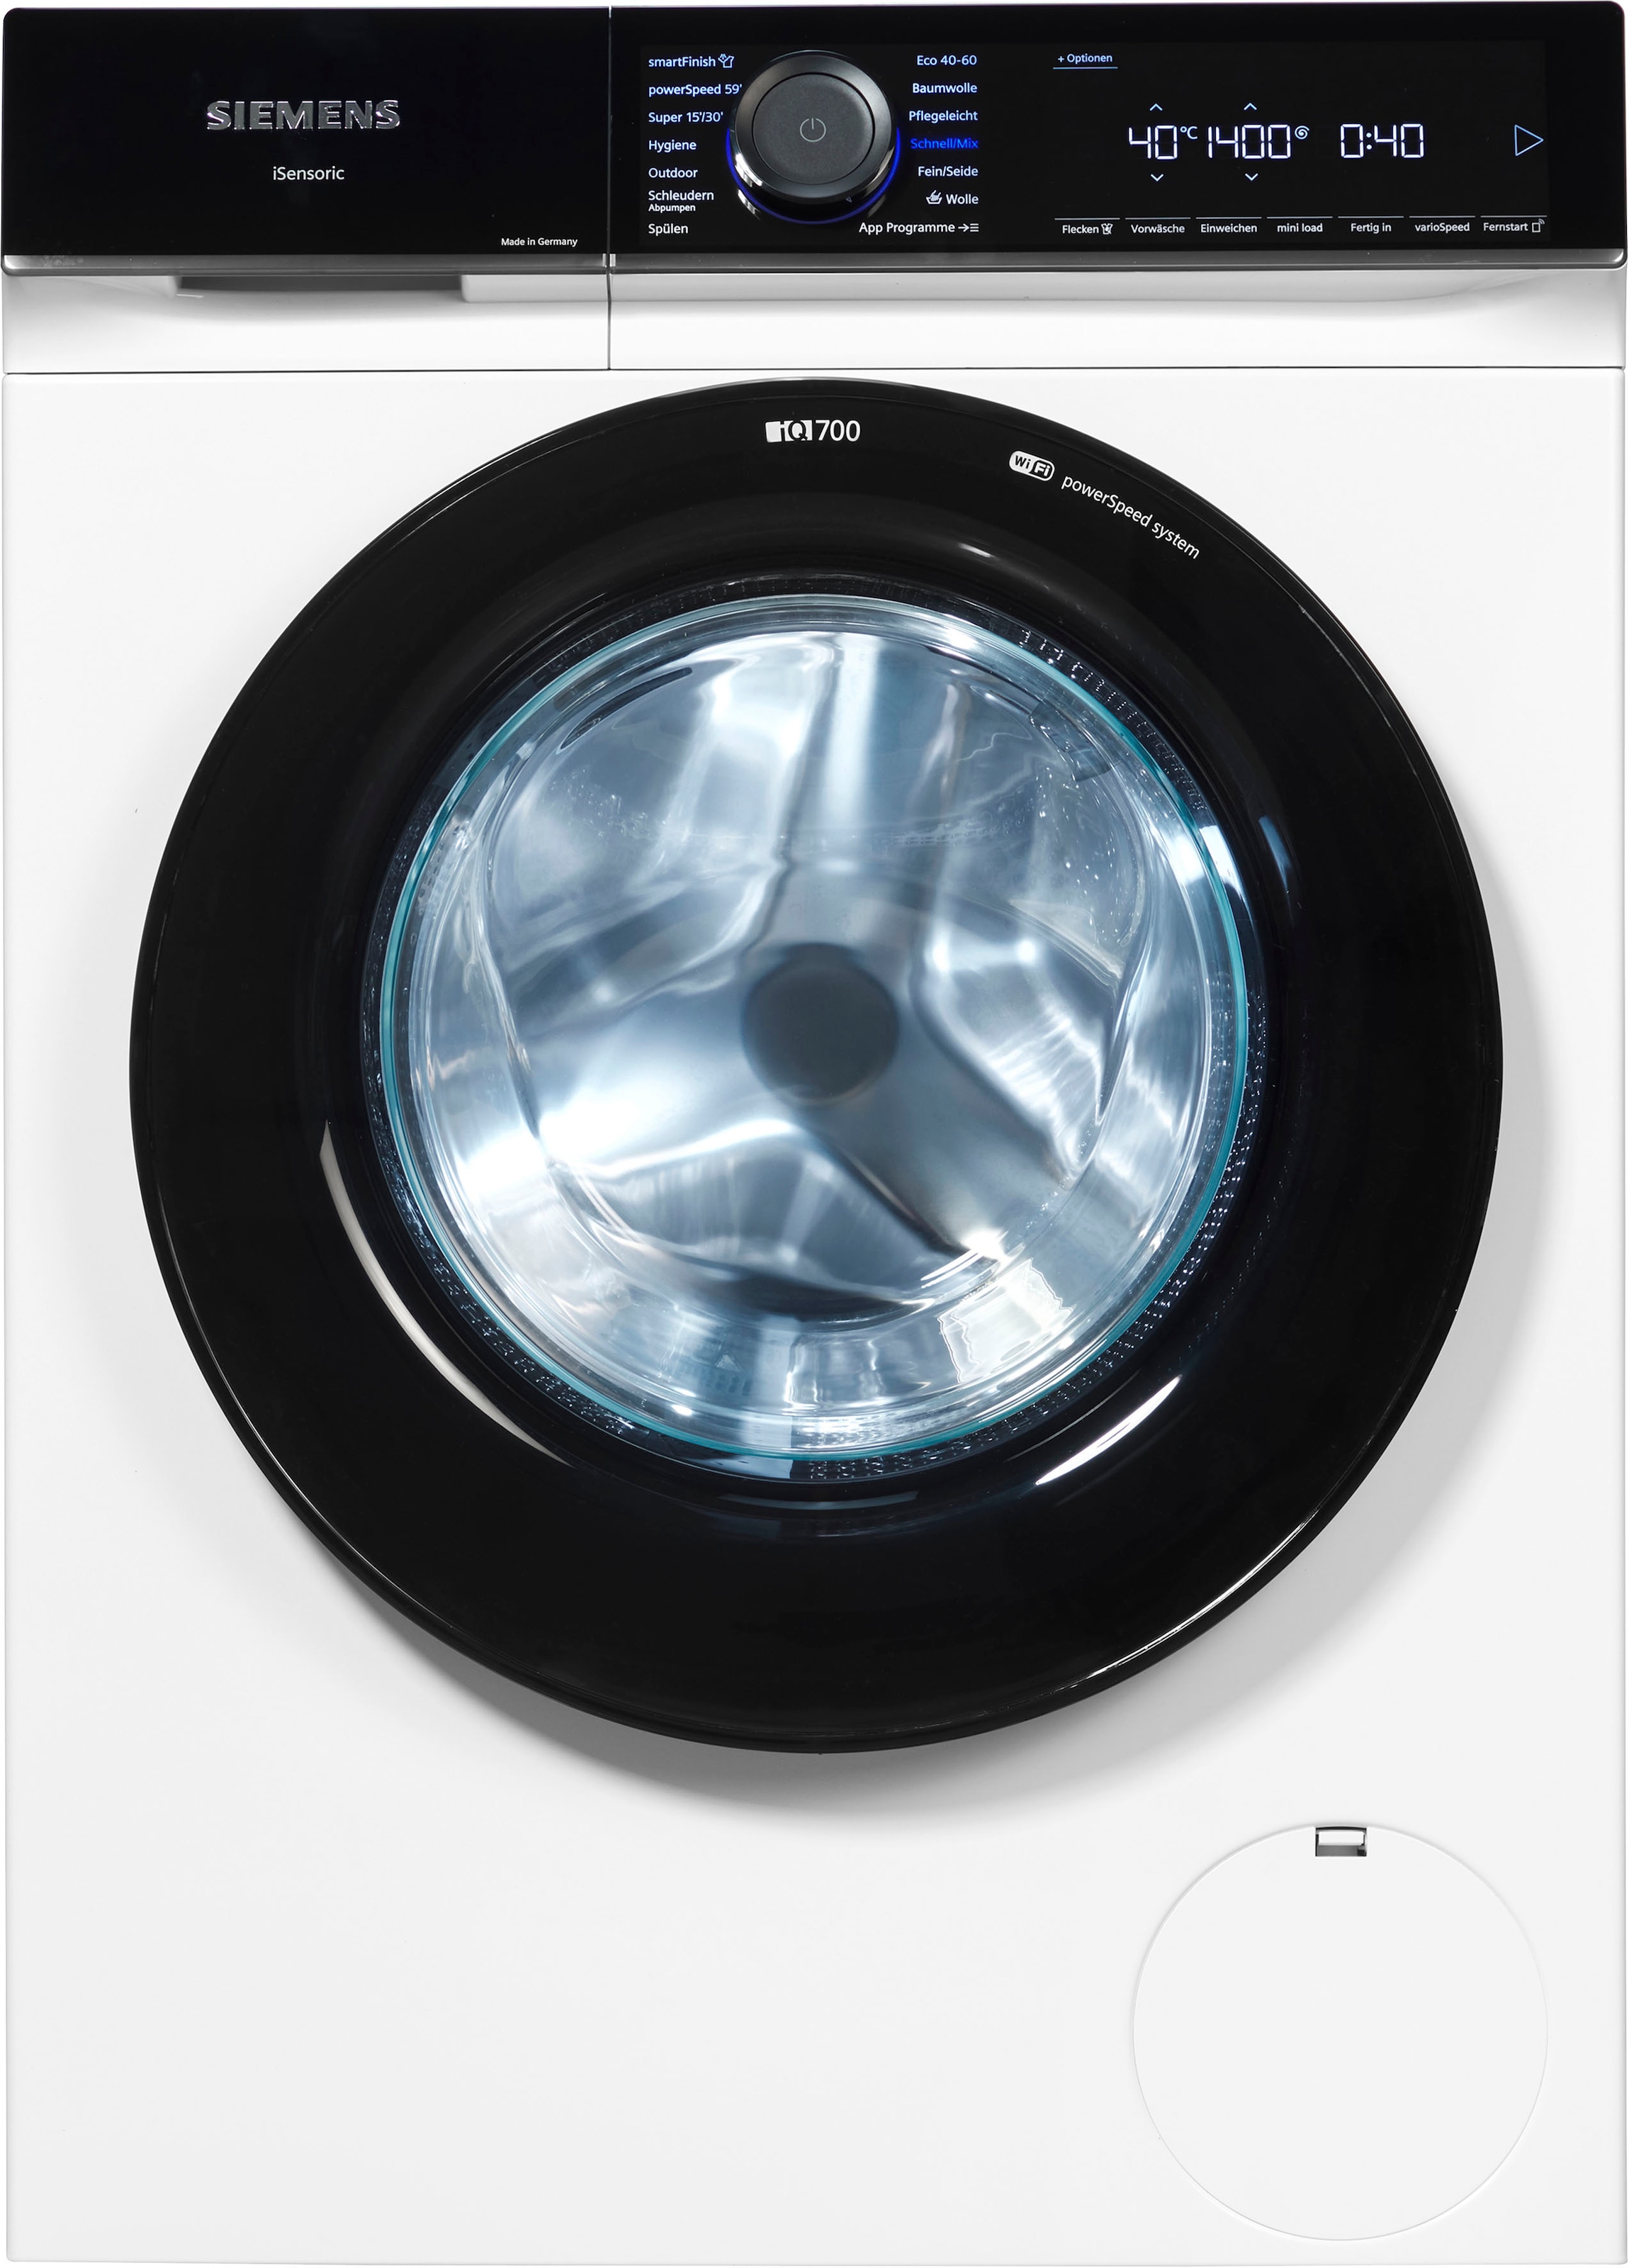 SIEMENS 1400 glättet dank sämtliche OTTO Waschmaschine smartFinish 9 Dampf U/min, WG44B20Z0, »WG44B20Z0«, bei Knitterfalten kg, – iQ700,